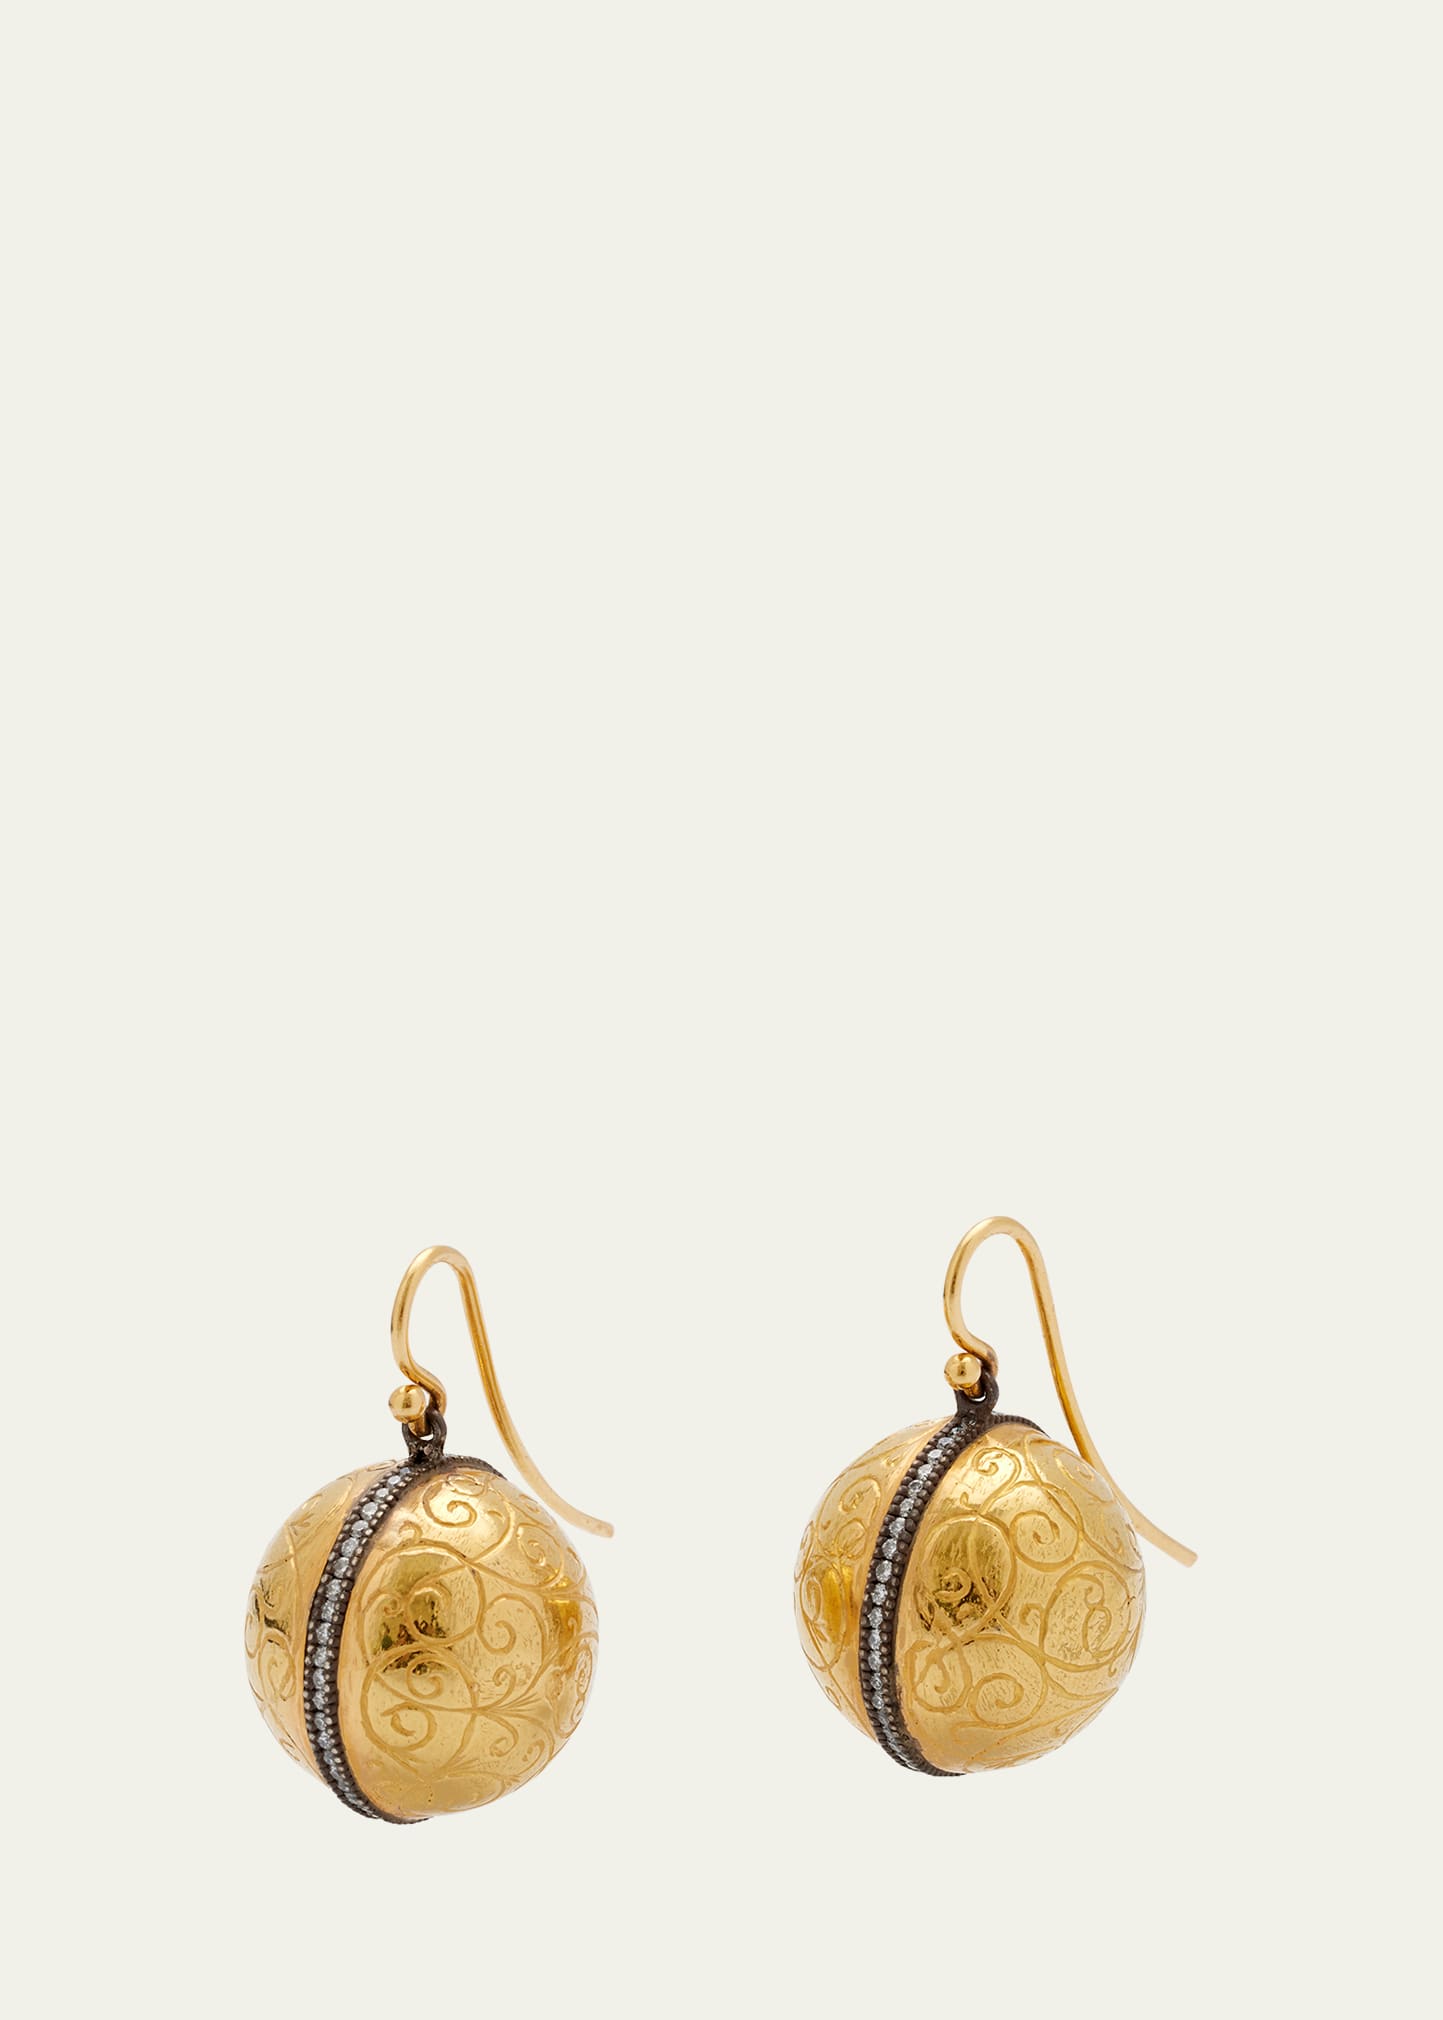 Arman Sarkisyan Engraved Ball Earrings with Diamonds